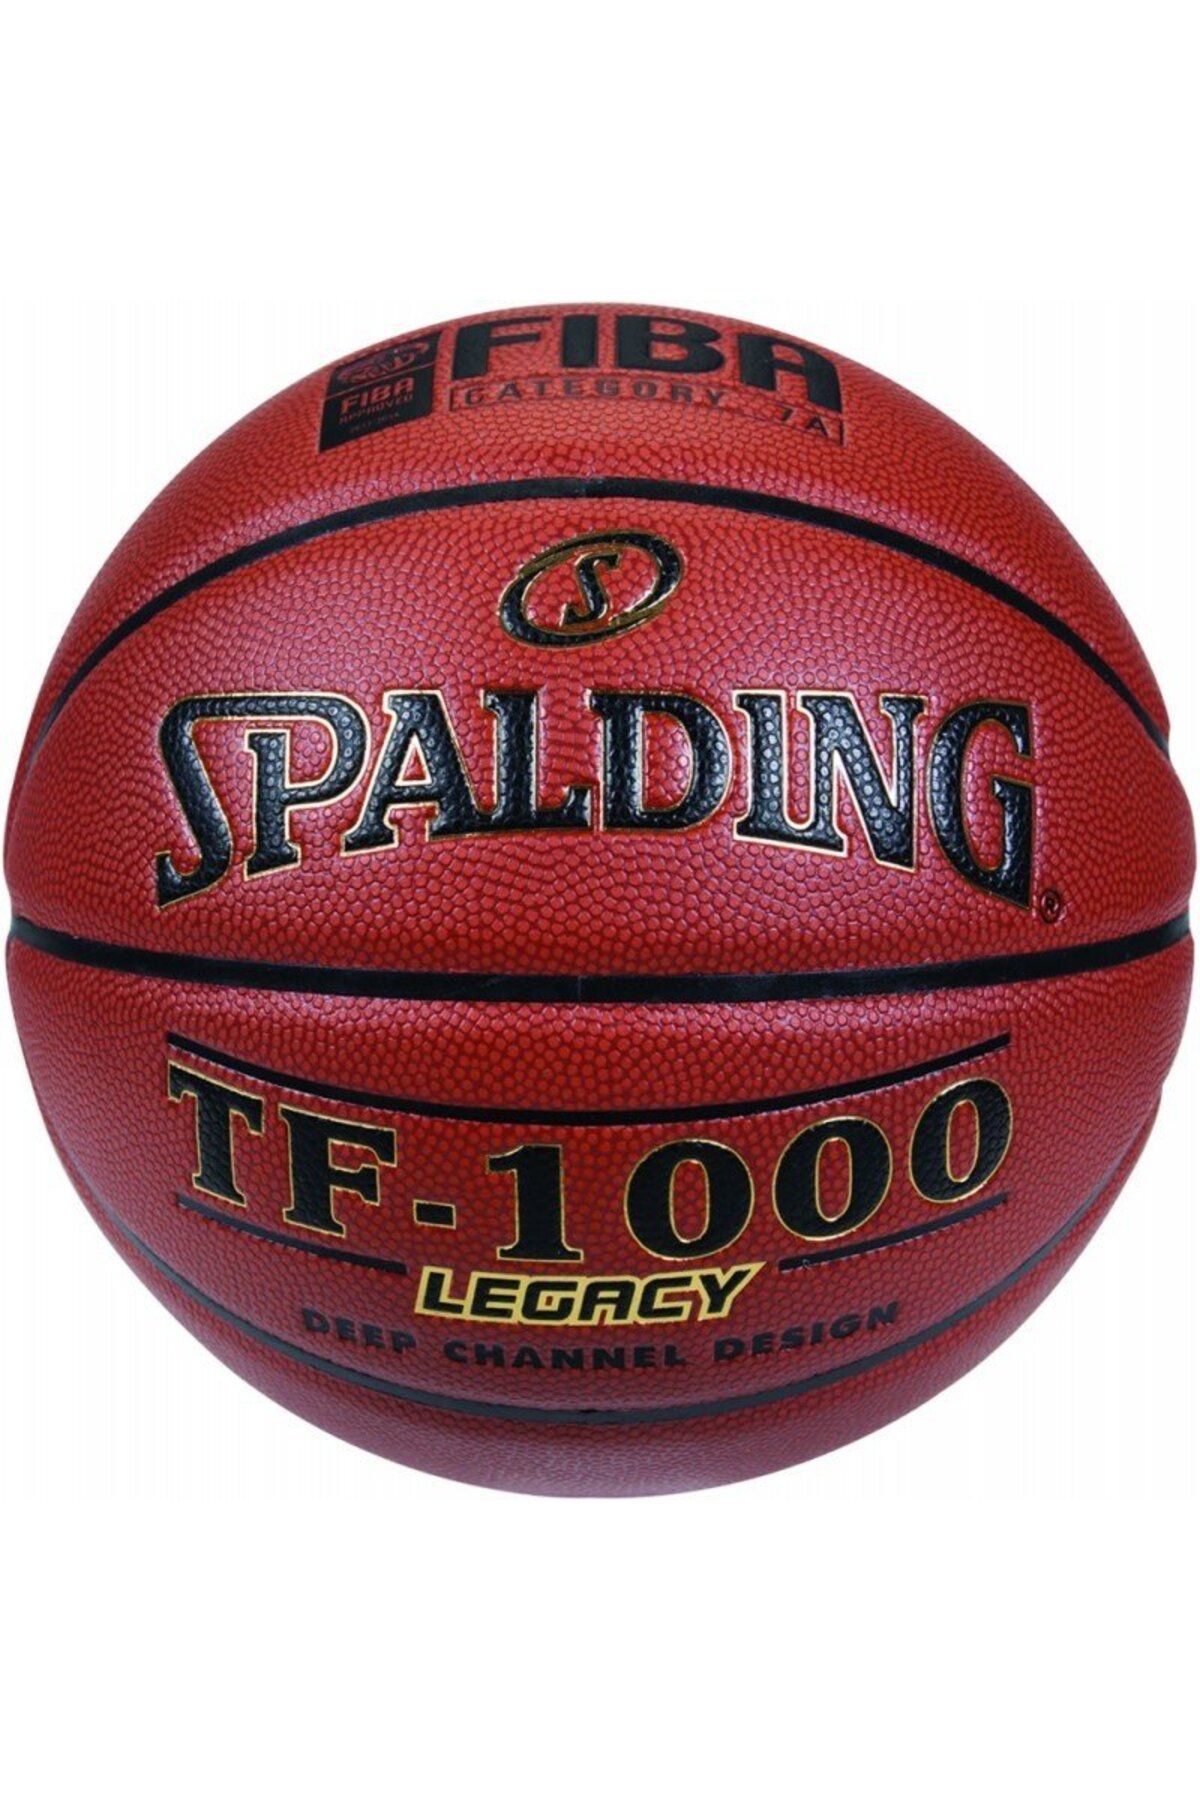 Spalding Tf1000 Zk Pro No6 Basketbol Topu 74-451z